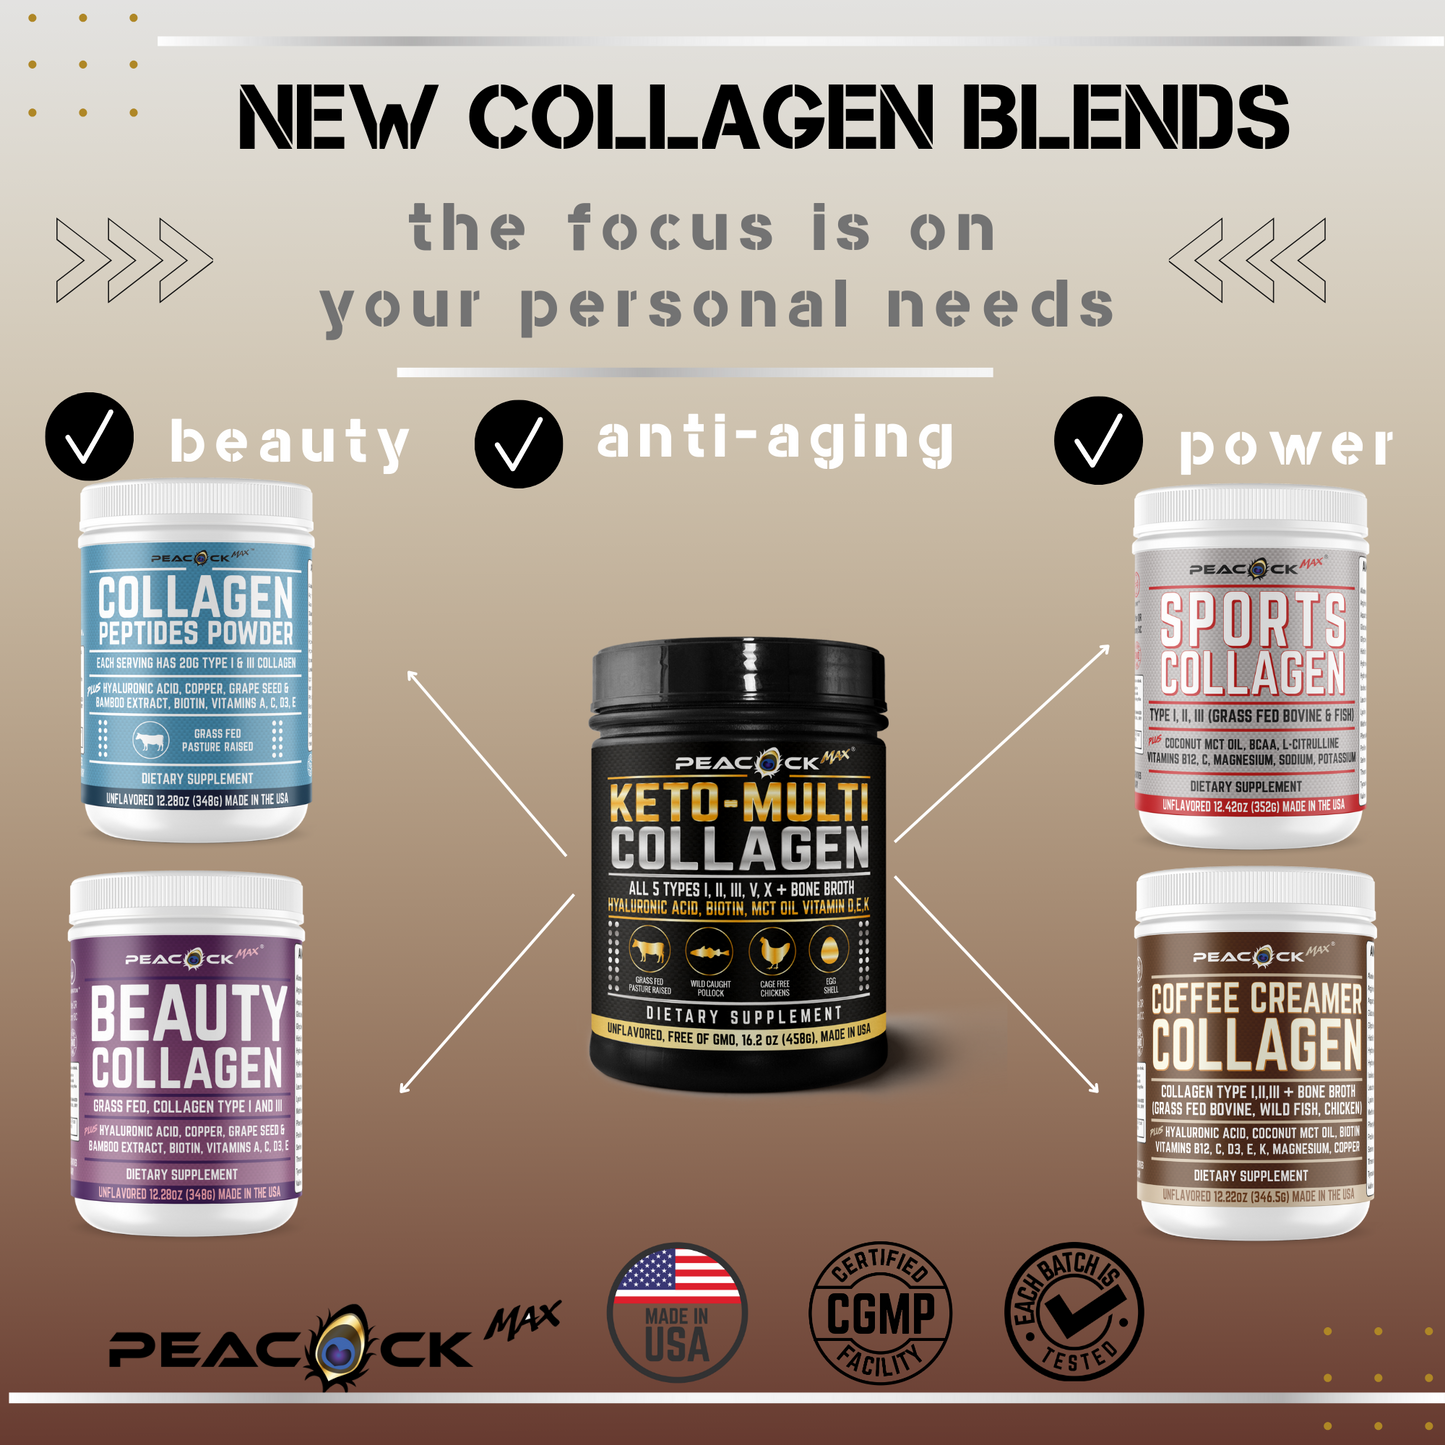 Coffee Creamer Collagen